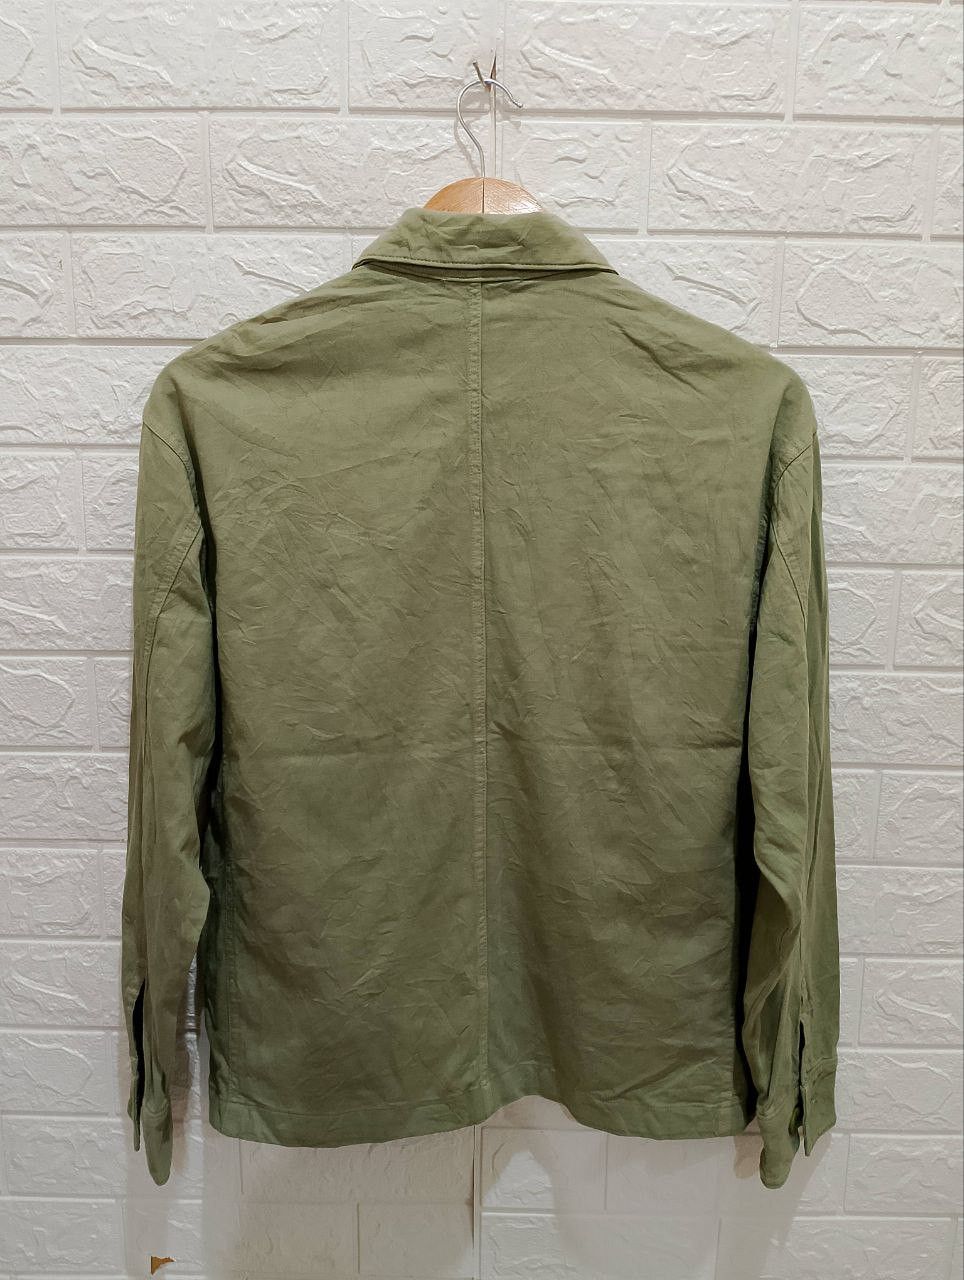 Archival Clothing - Macphee Military OG-107 Design Long Sleeve Shirt Jacket - 3